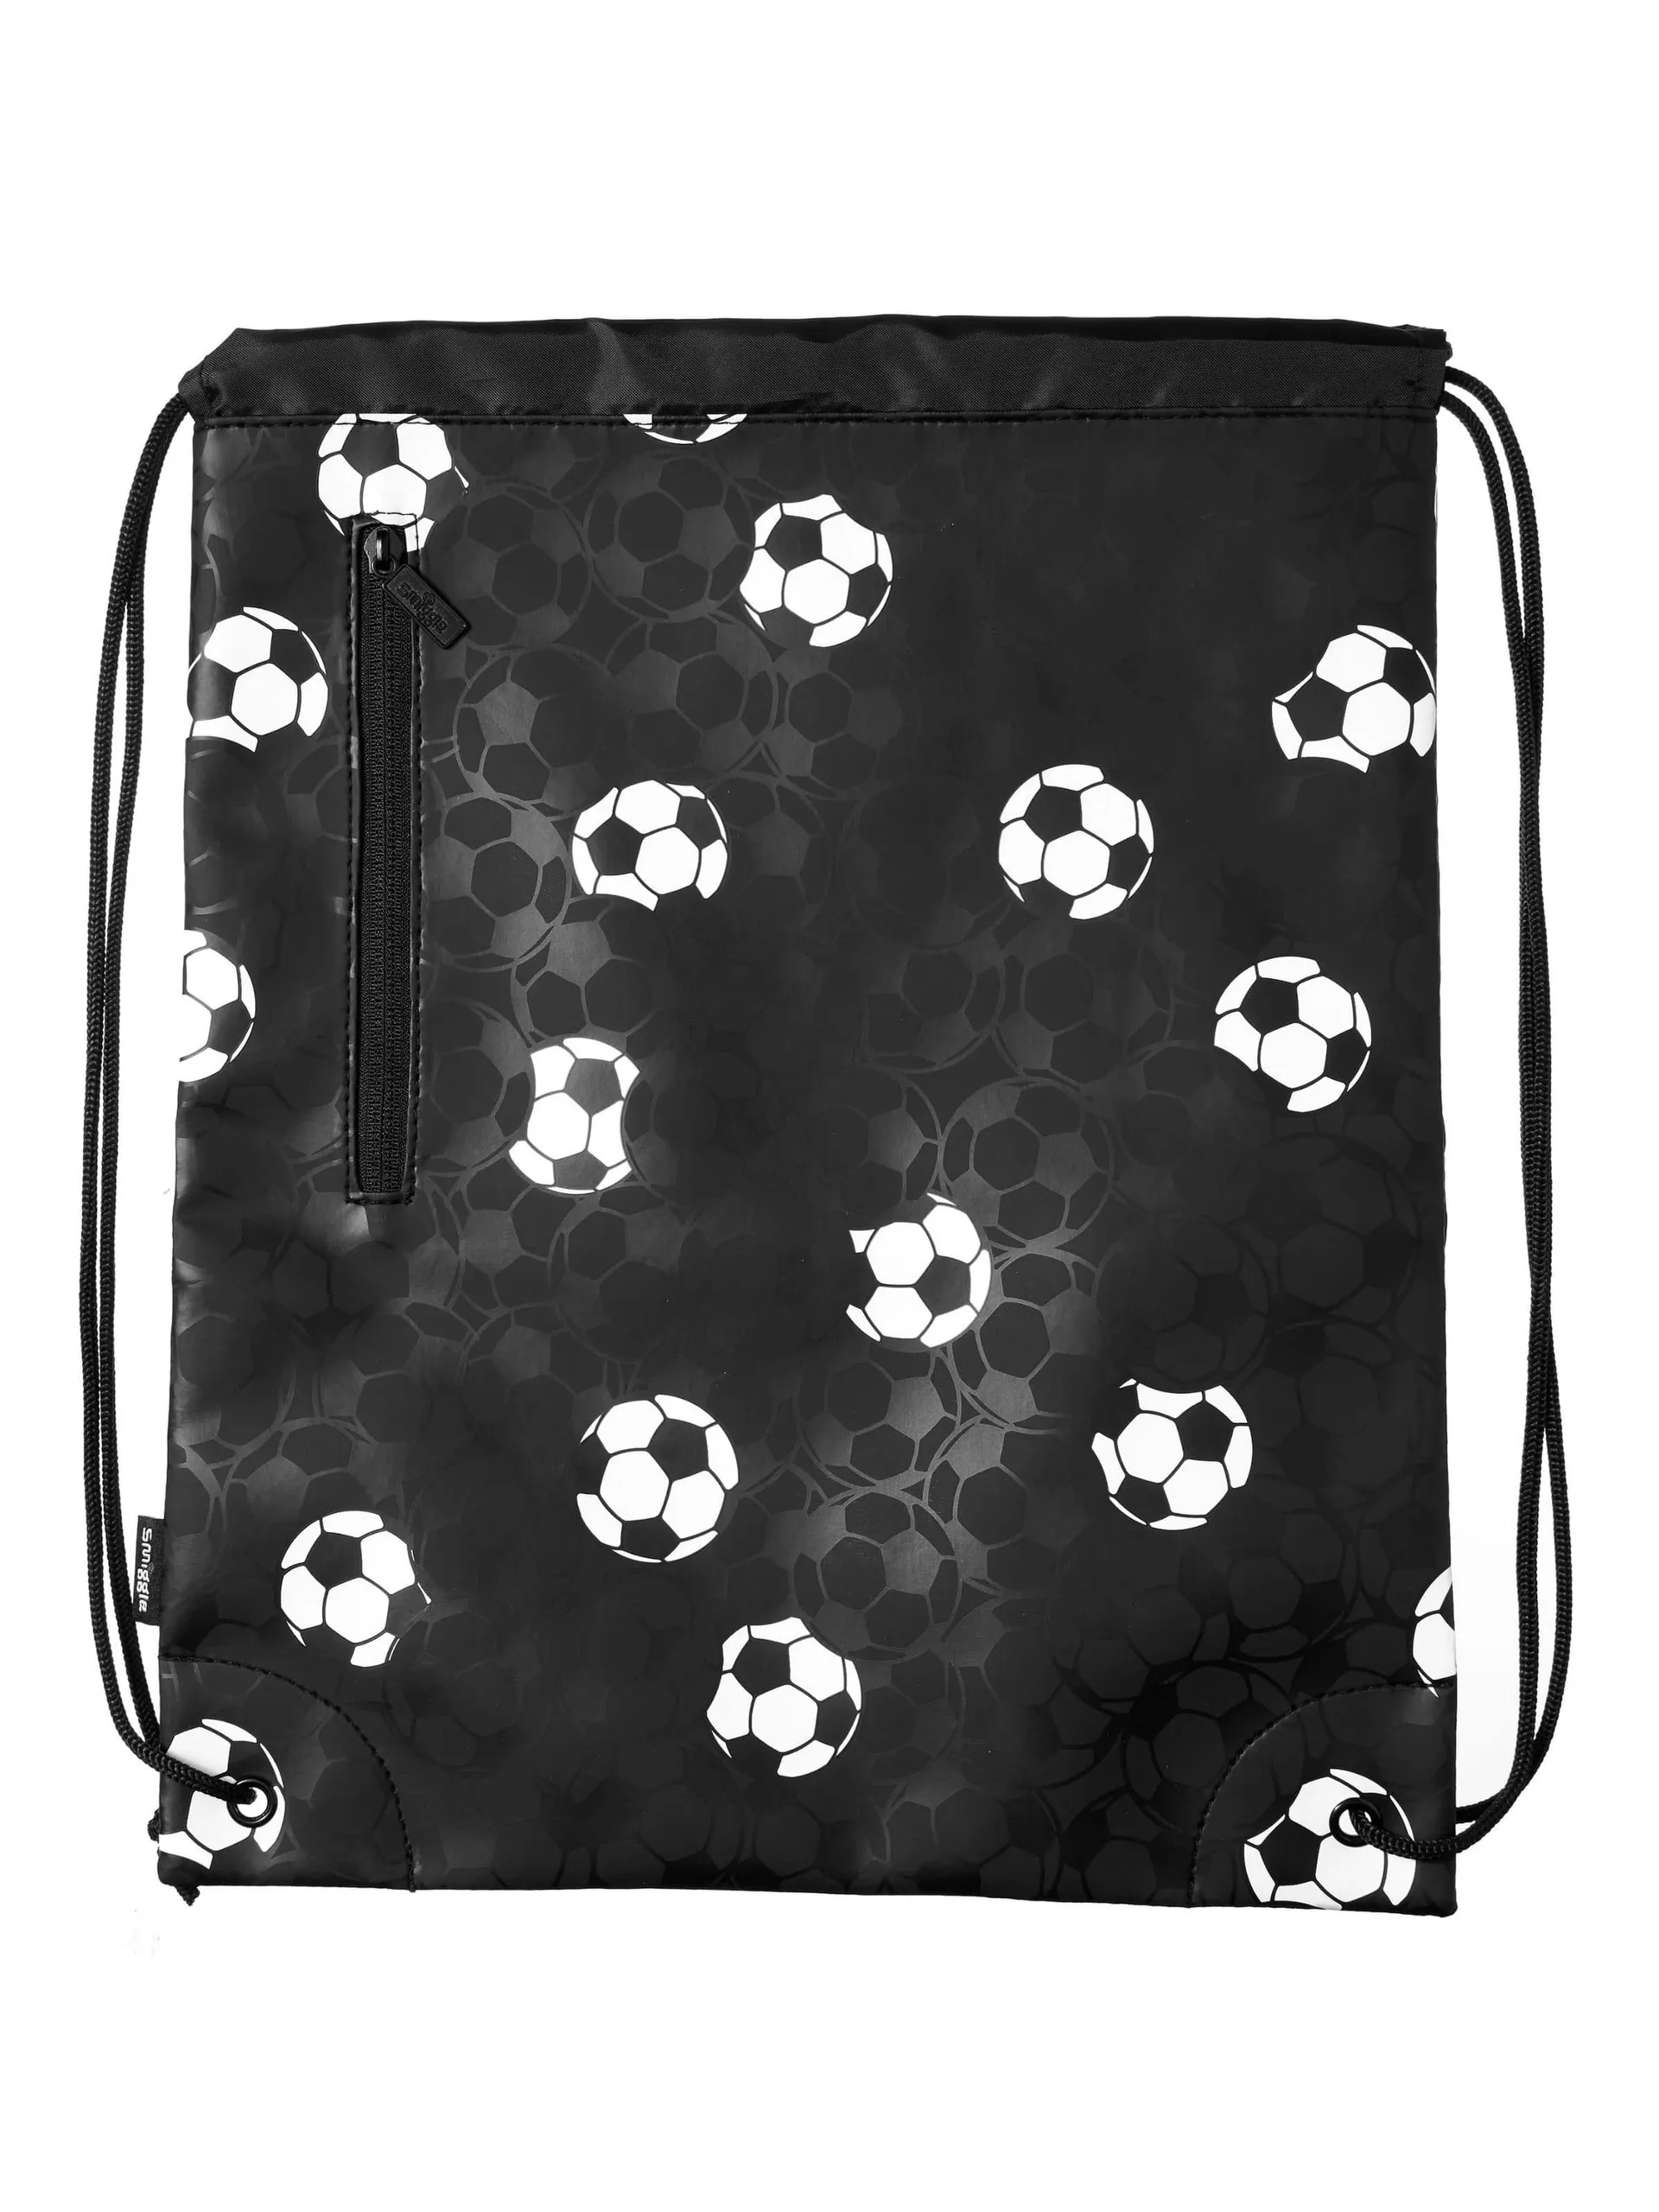 Goal Drawstring Bag